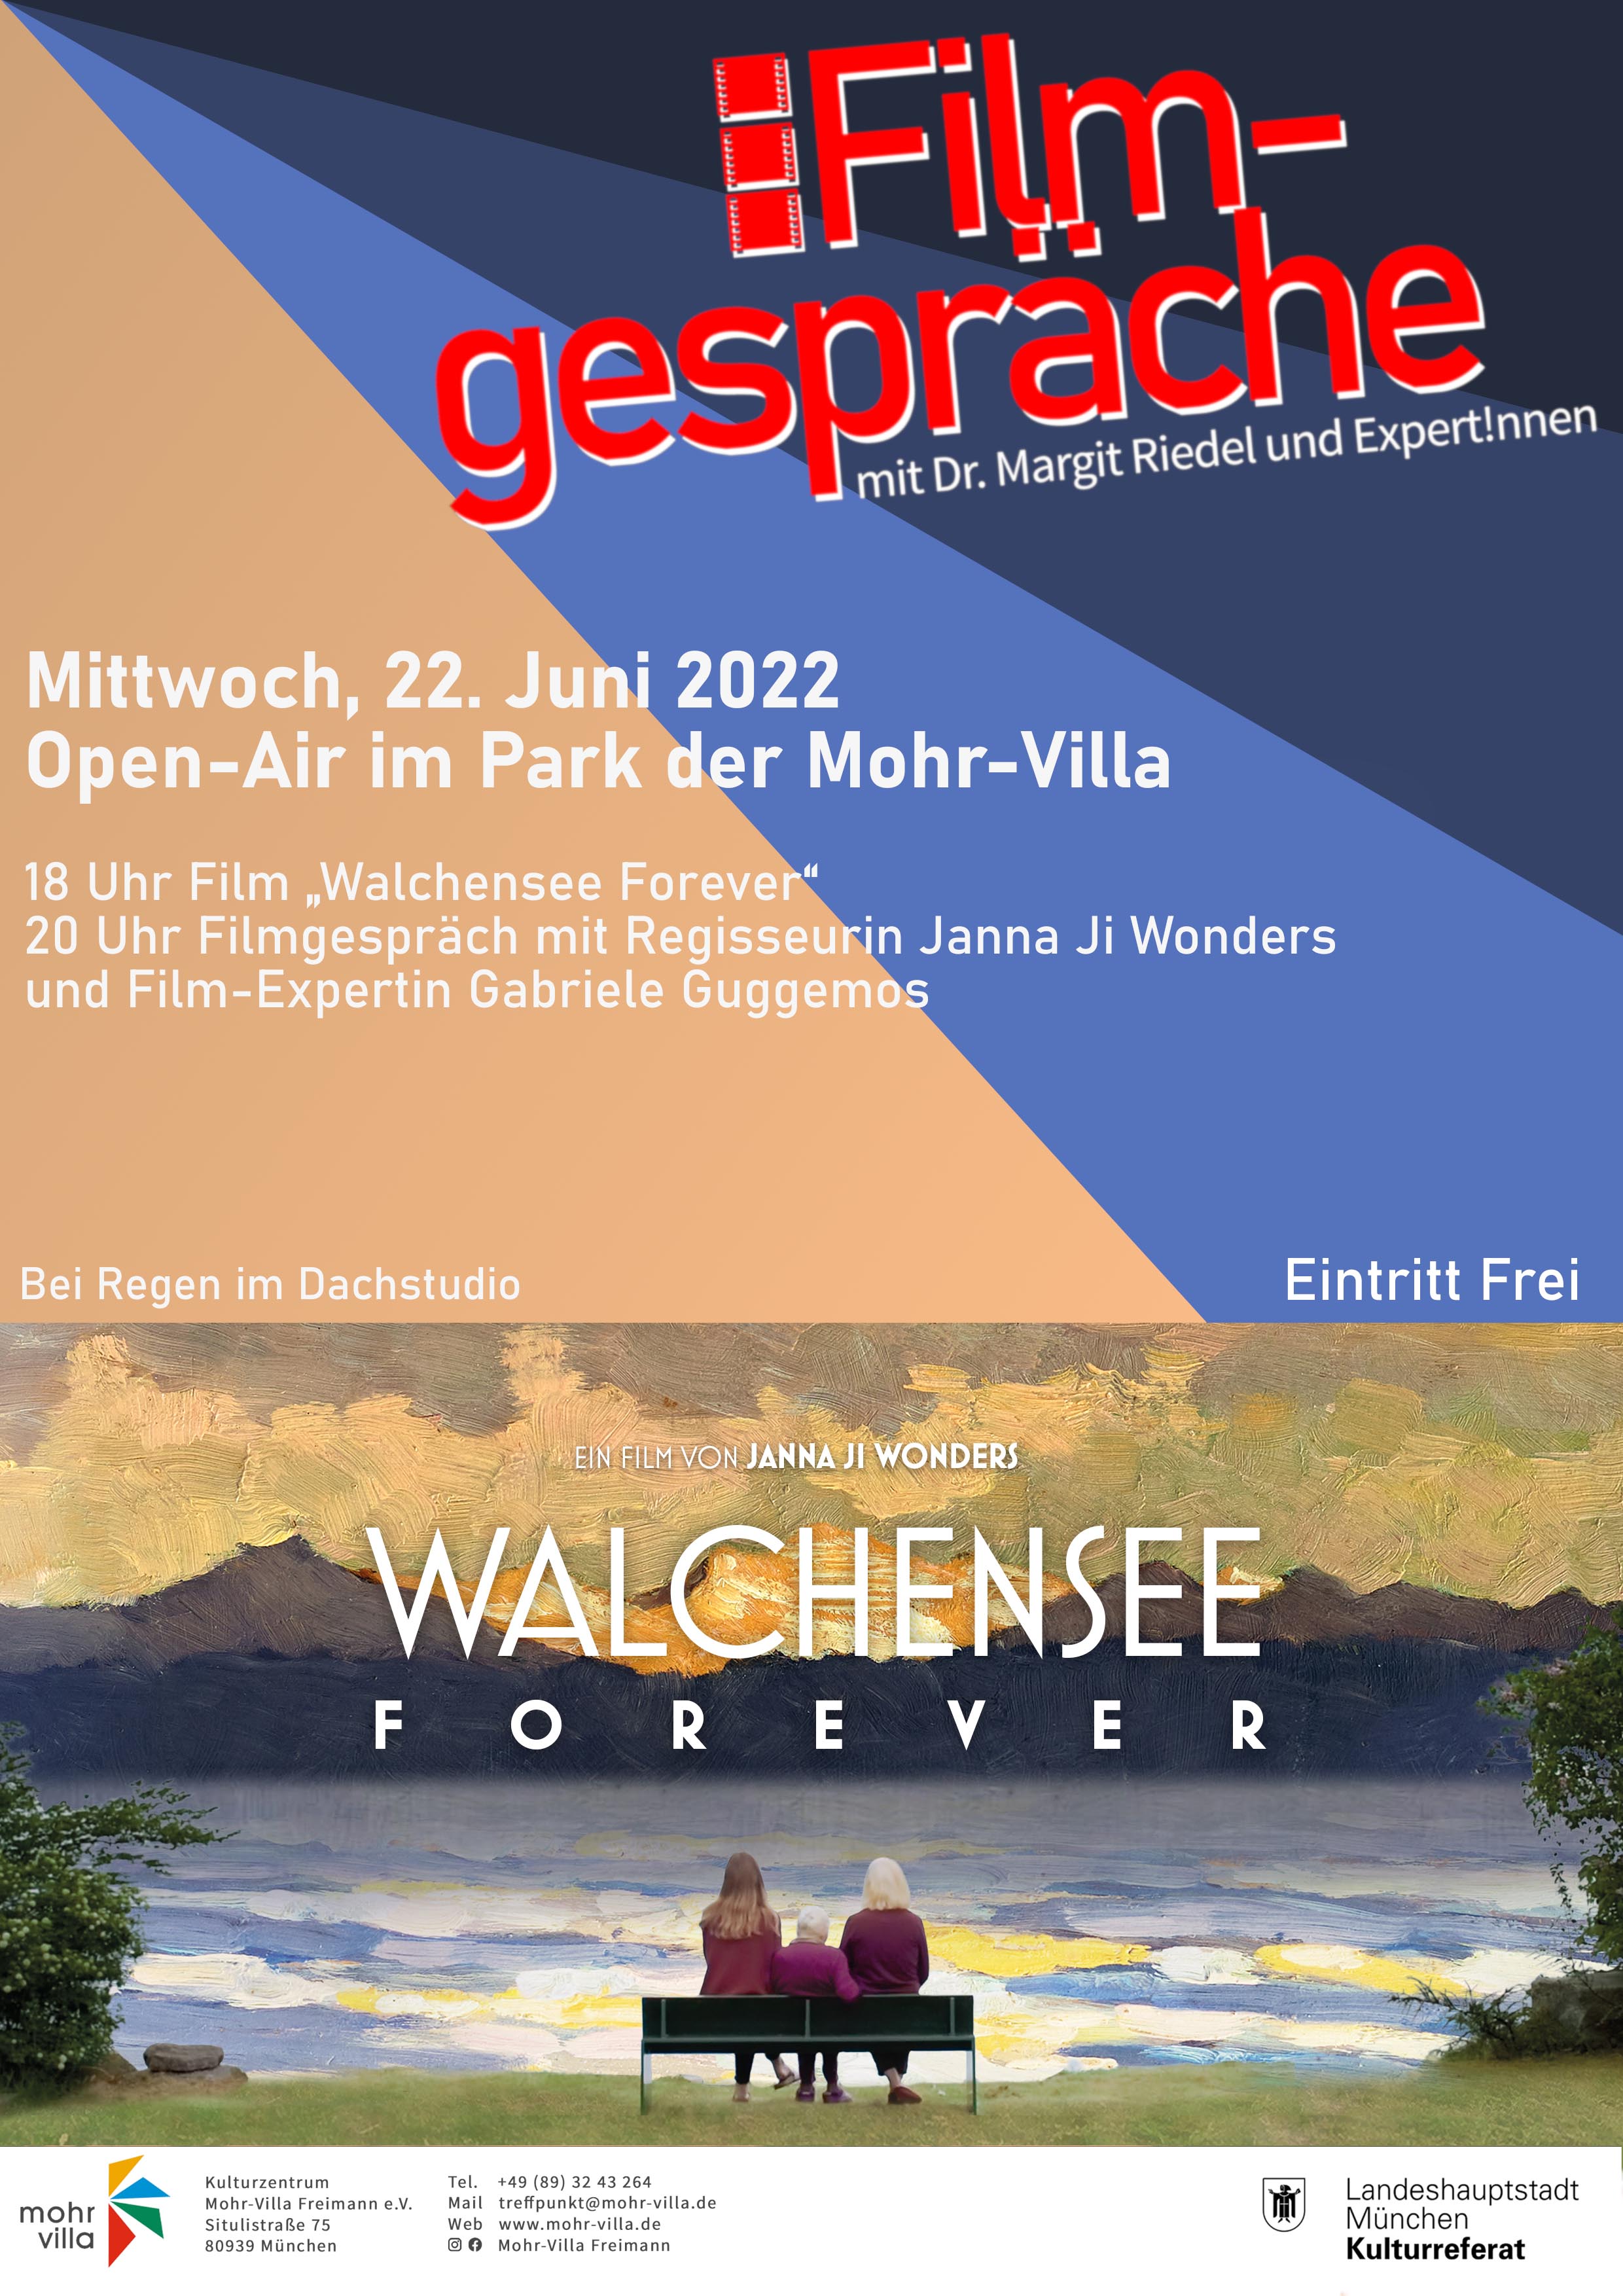 Plakat zur Veranstaltung: Hybrid: Walchensee forever